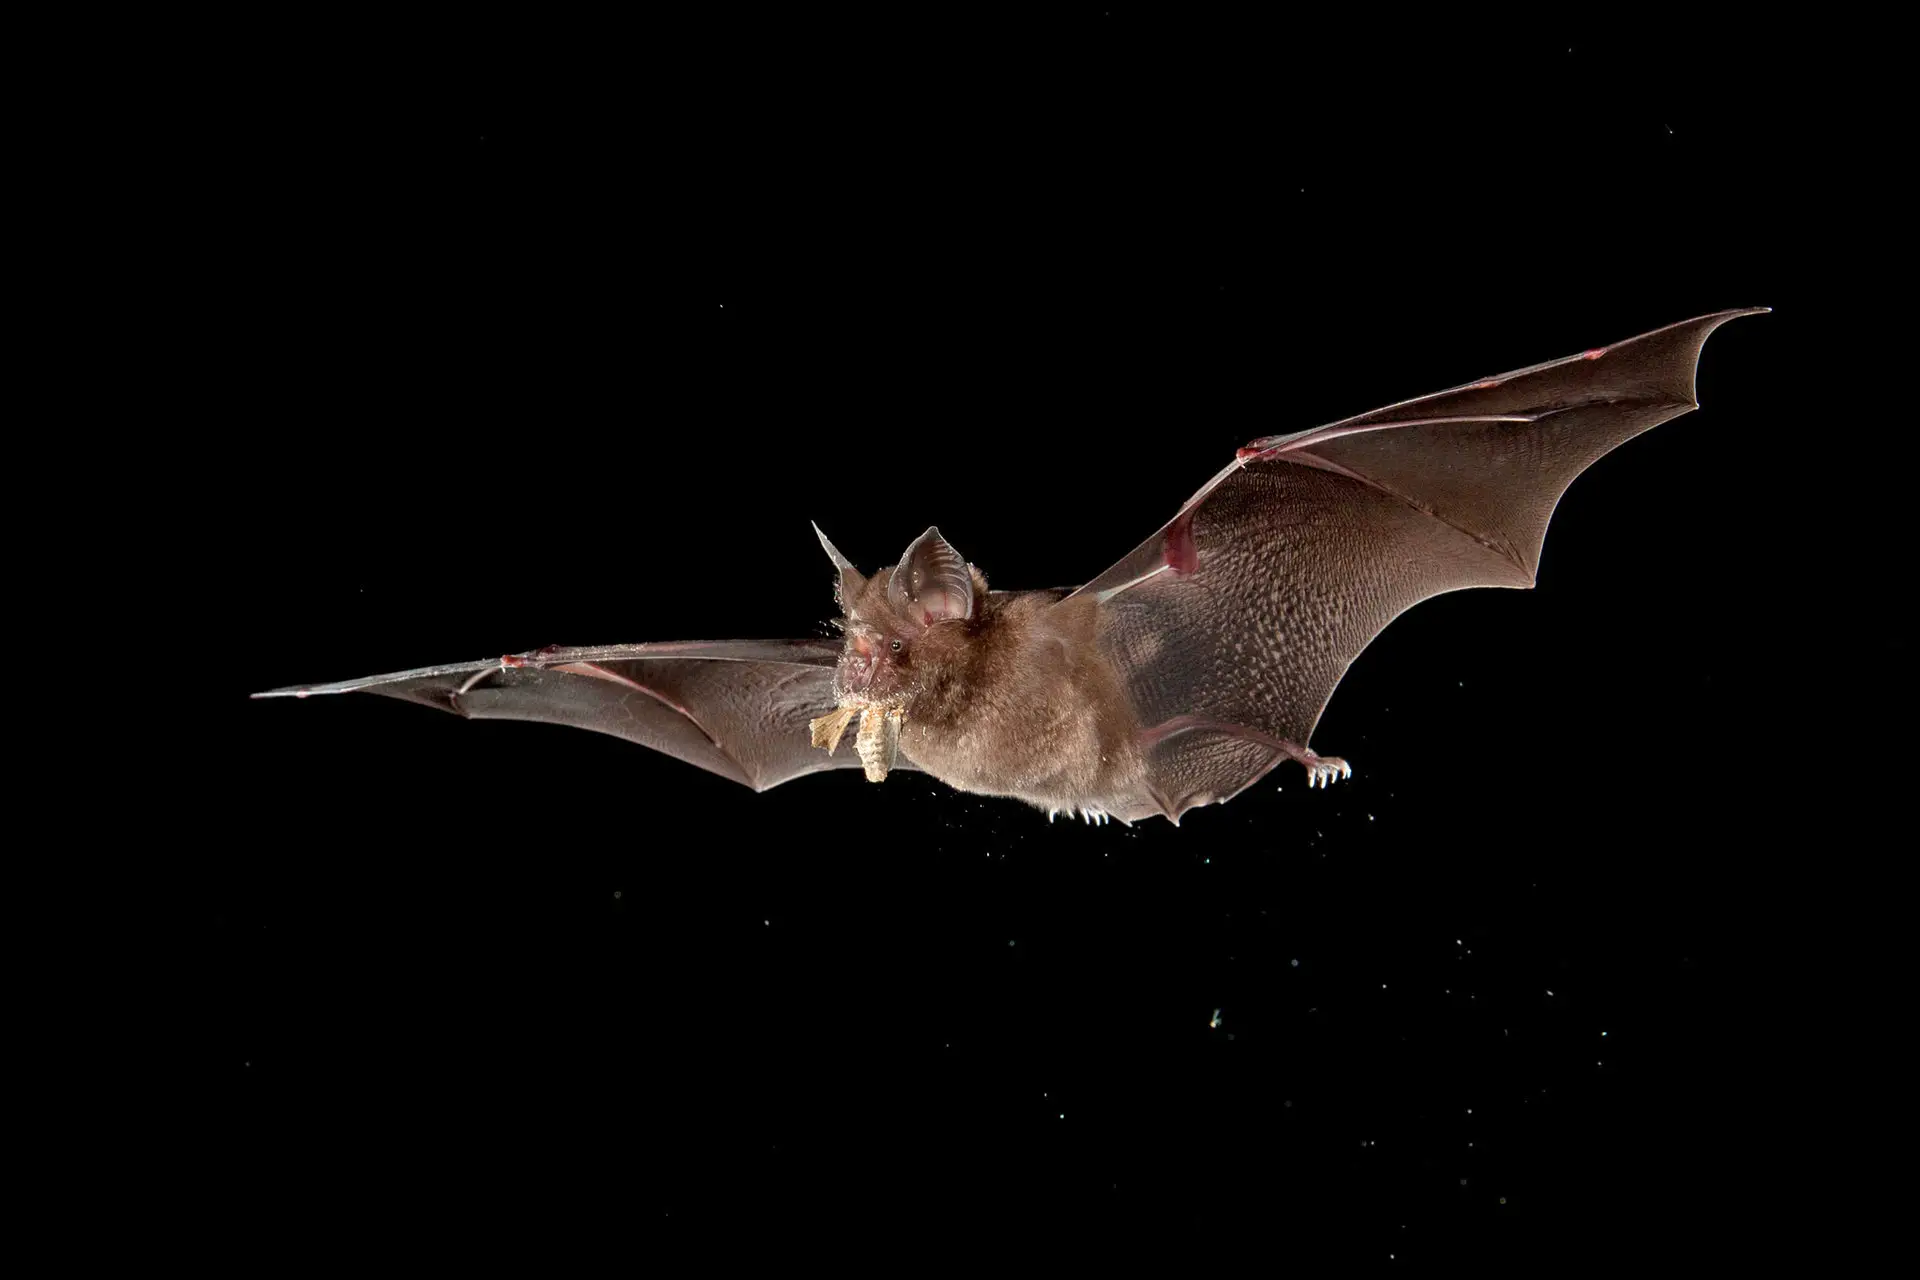 Conoce algunas curiosidades sobre los únicos mamíferos que pueden volar, los murciélagos